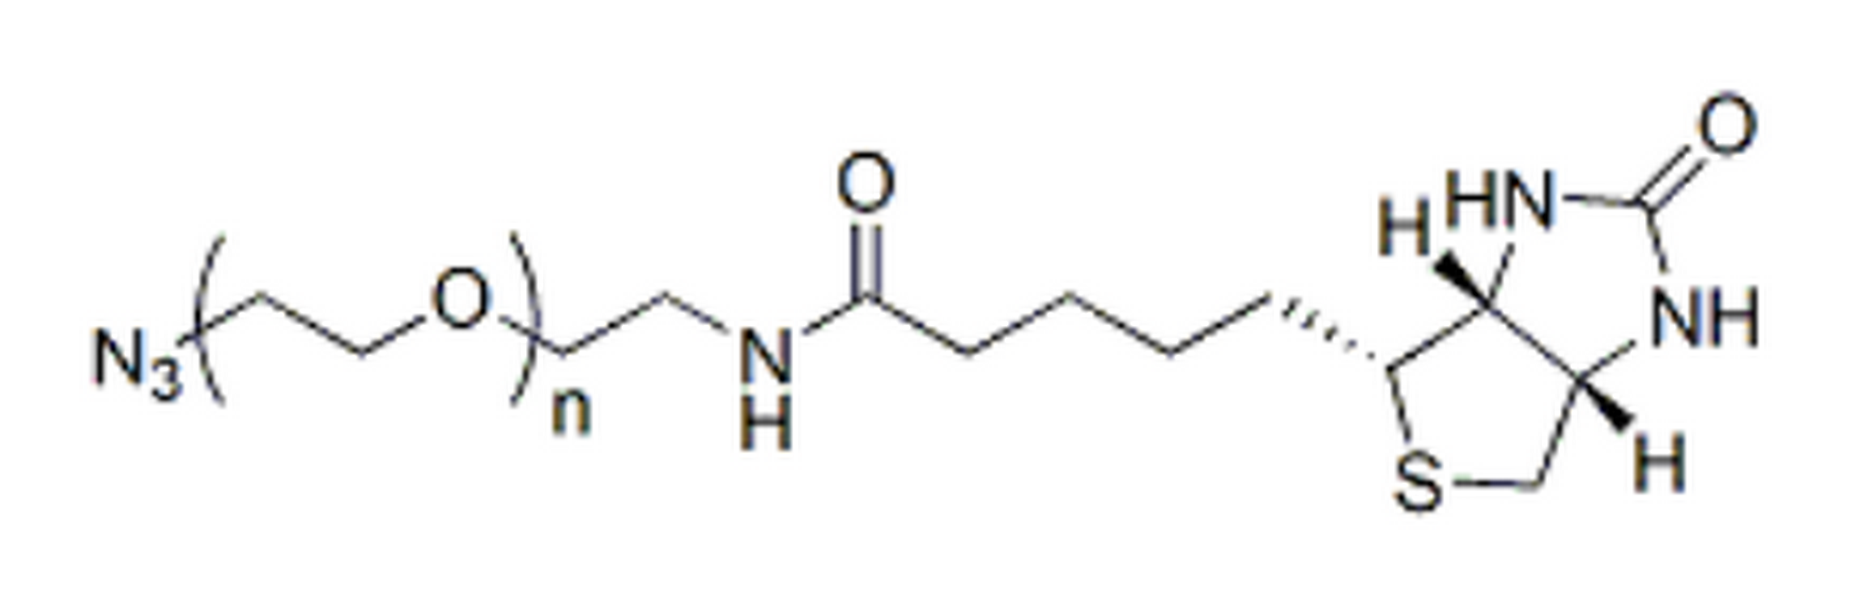 Biotin-PEG-azide, MW 2K